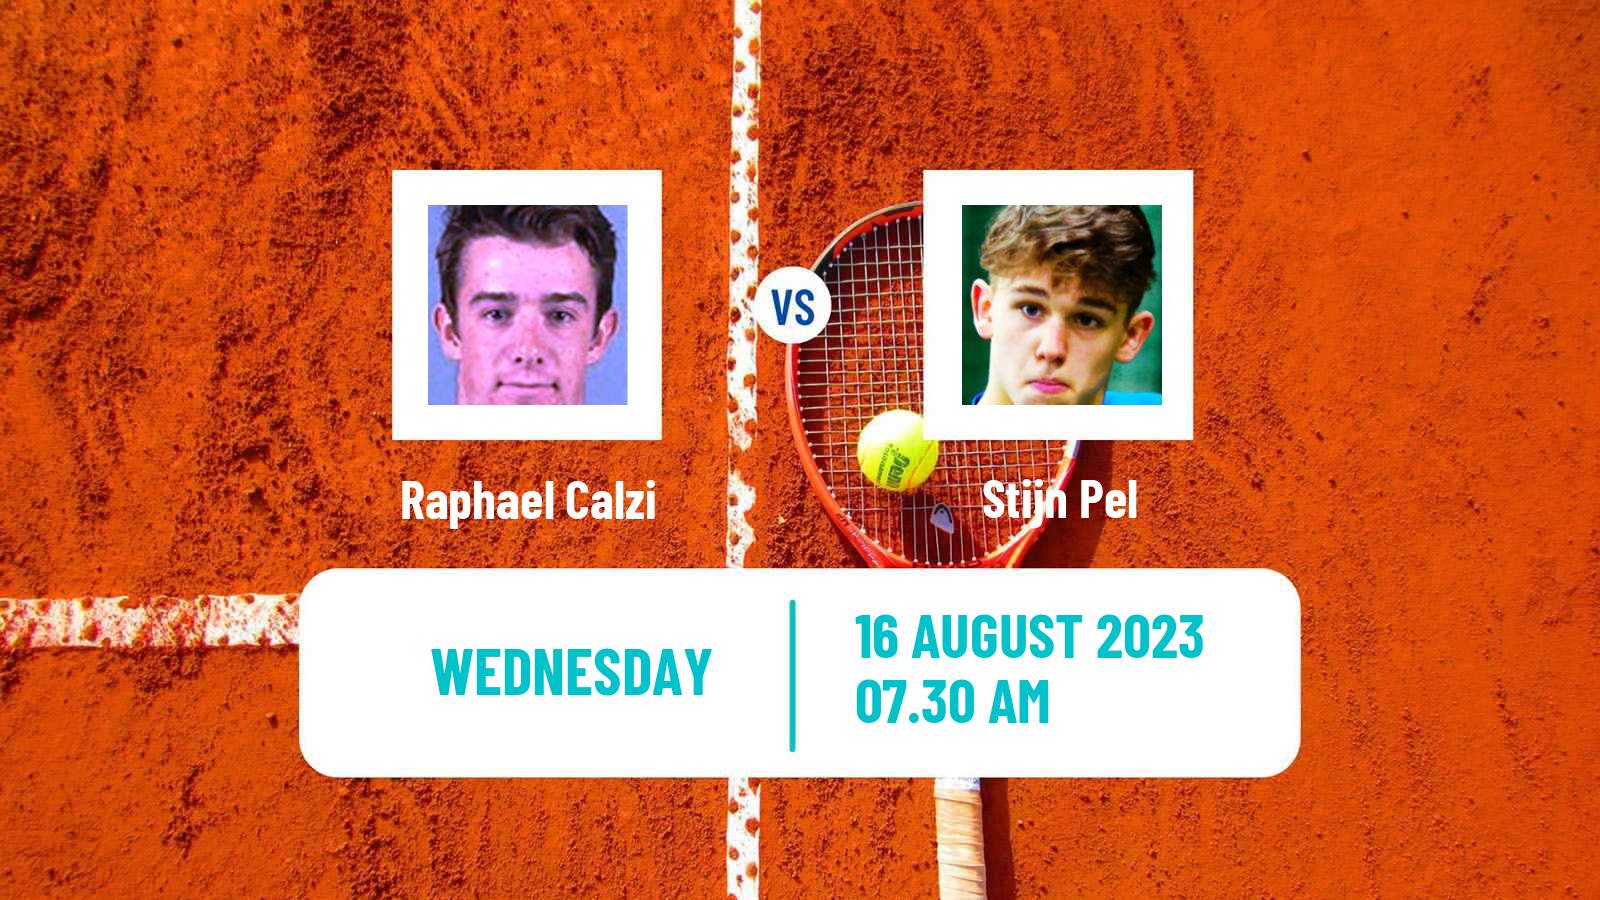 Tennis ITF M25 Ystad Men Raphael Calzi - Stijn Pel